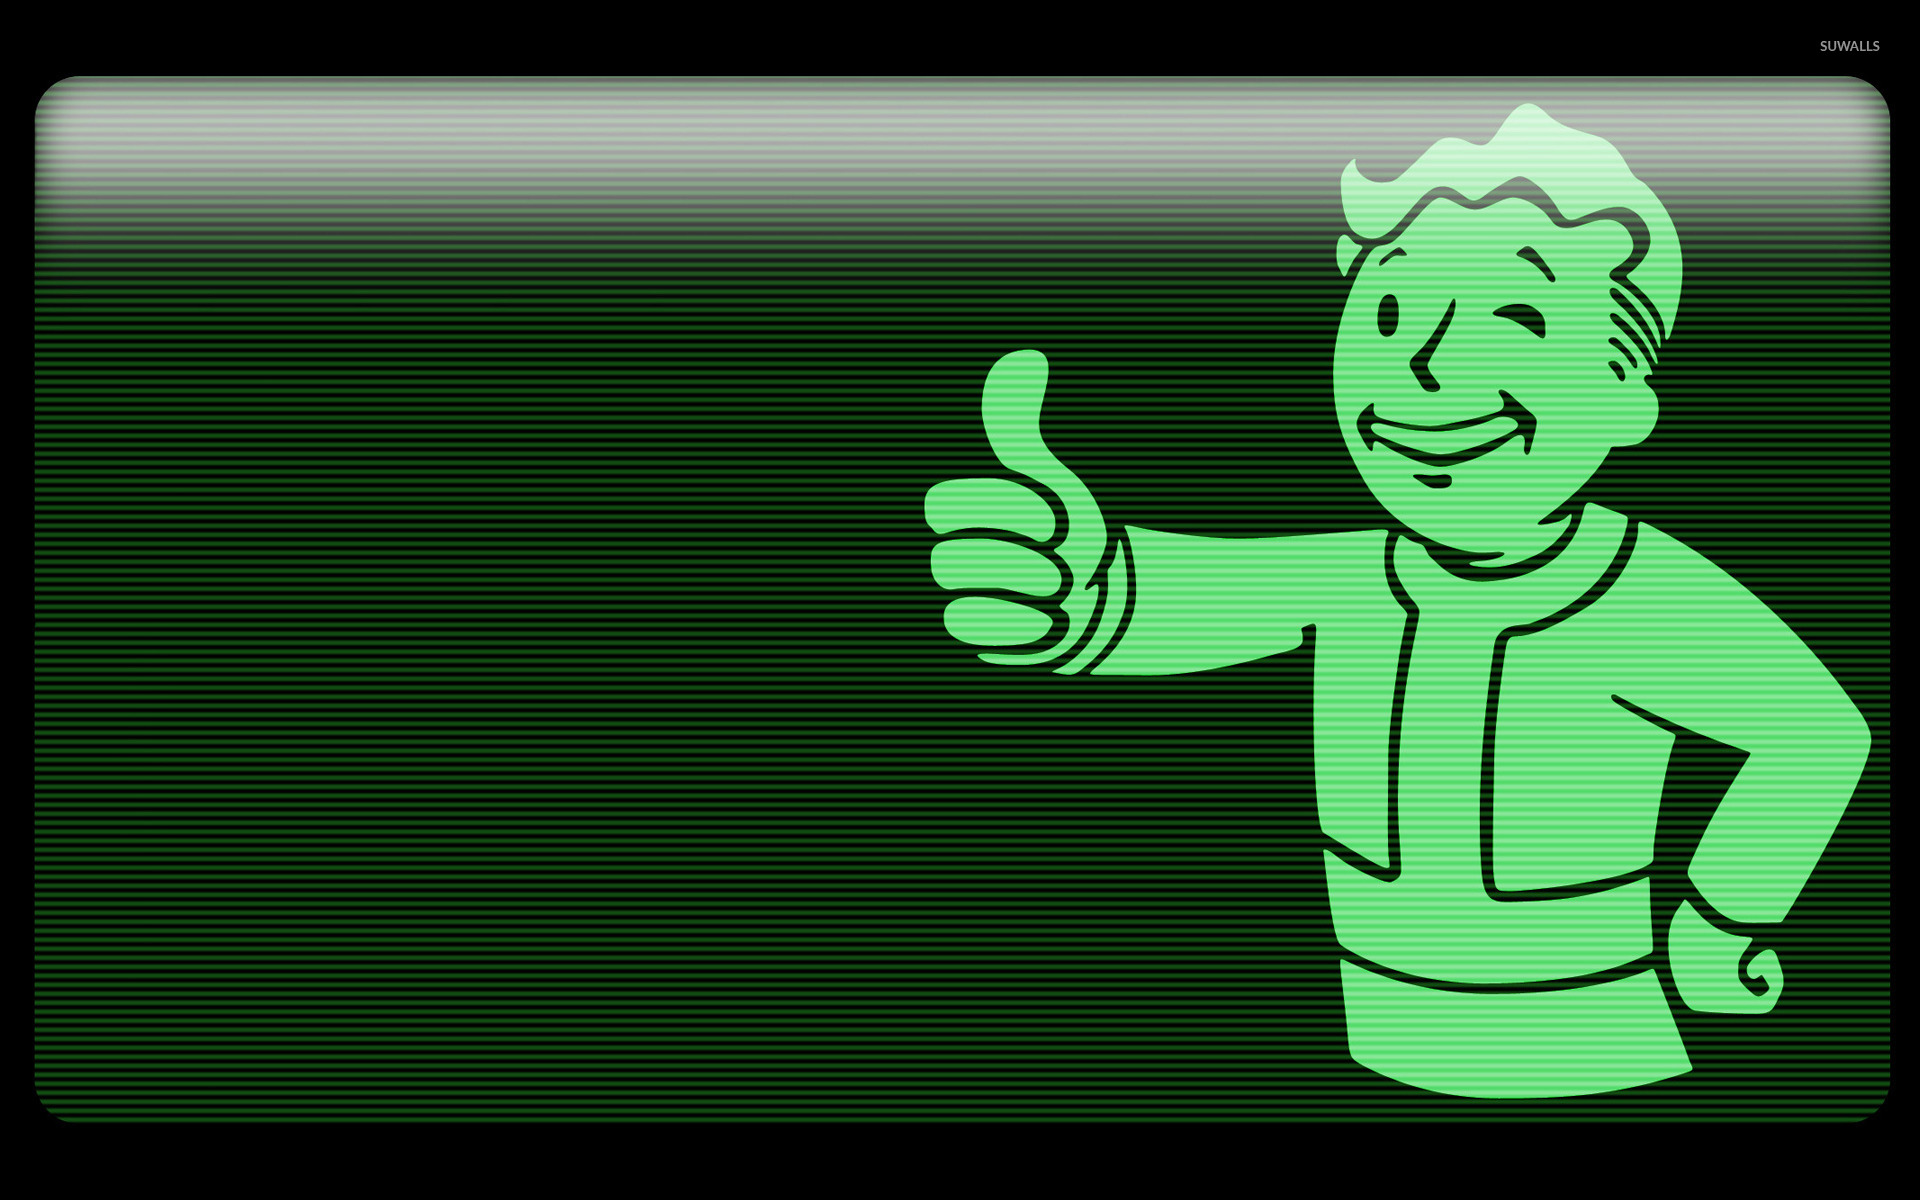 Free Download Fallout Vault Boy Wallpaper Fallout 3 Vault Boy Wallpapers 1366x768 For Your Desktop Mobile Tablet Explore 50 Vault Boy Phone Wallpaper Fallout 3 Wallpaper Fallout 4 Wallpaper Hd Fallout 4 Wallpaper 19x1080